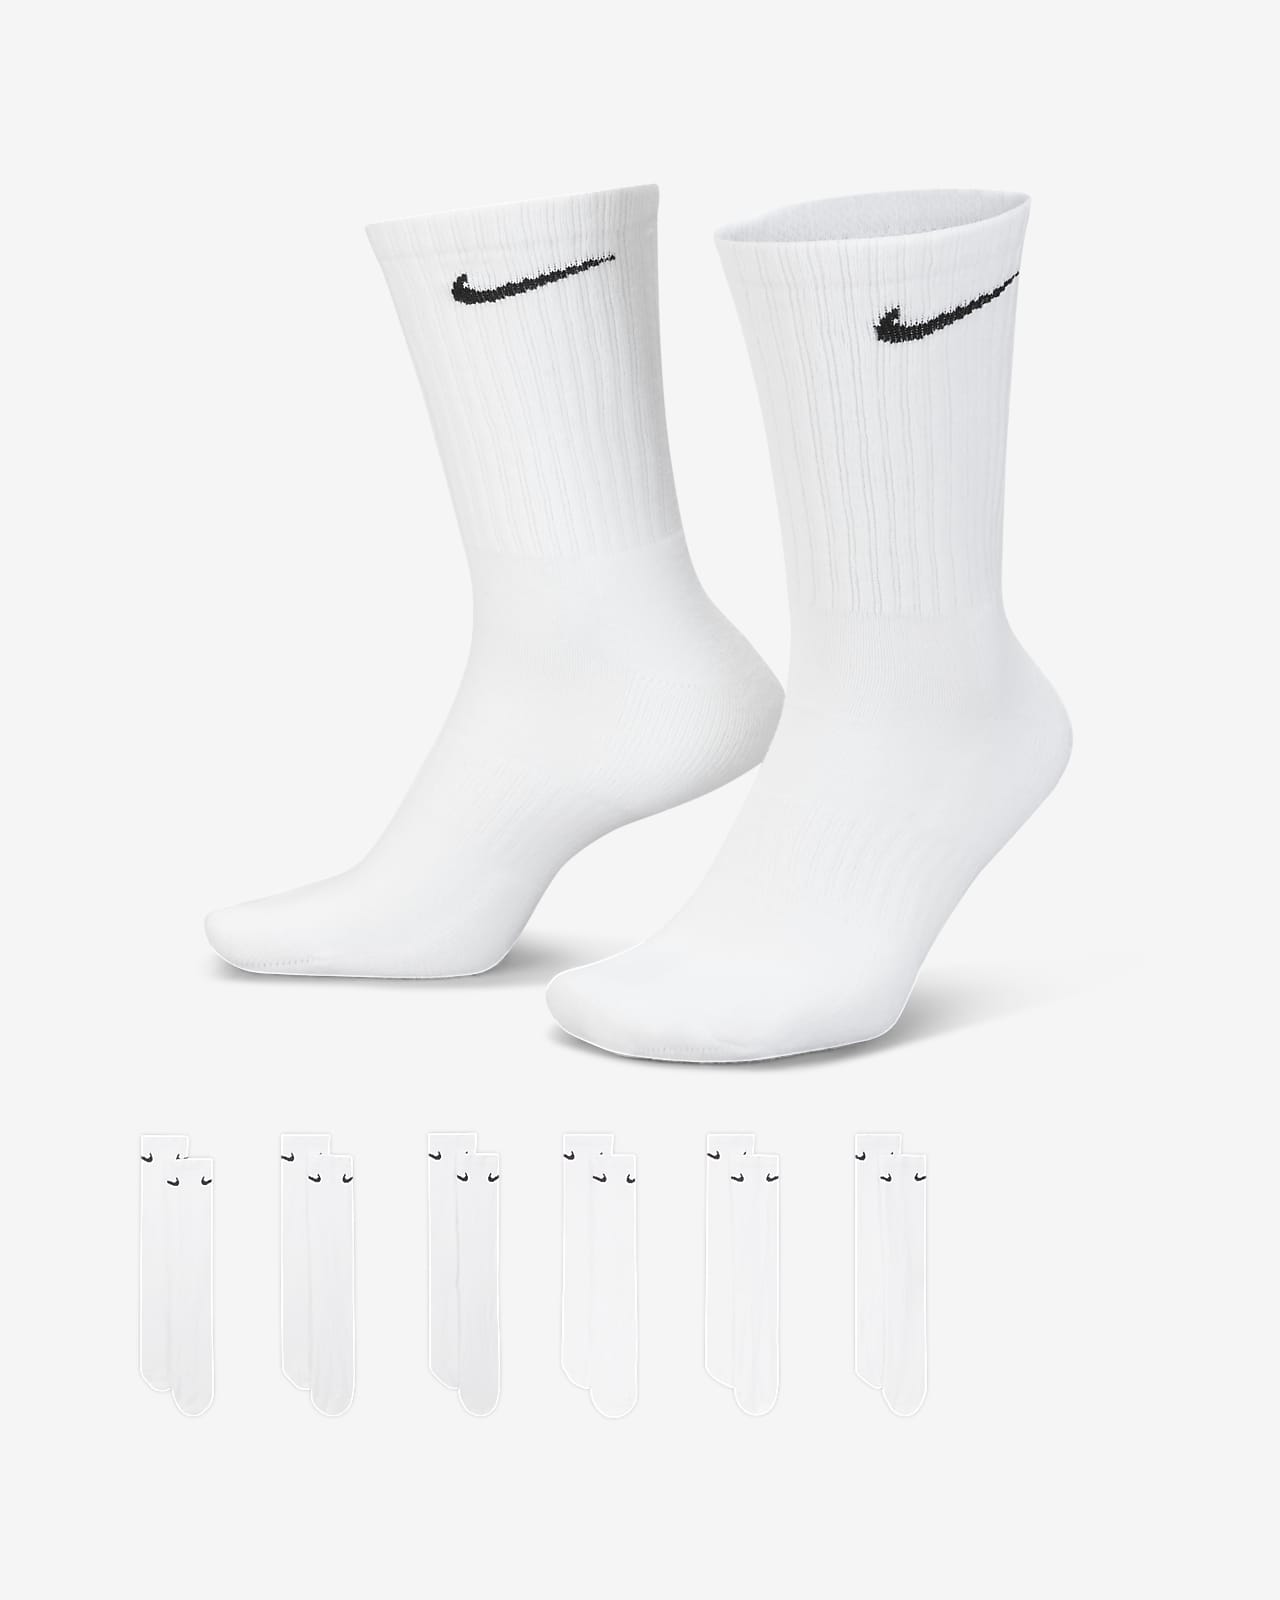 ถุงเท้าเทรนนิ่งข้อยาว Nike Everyday Cushioned (6 คู่)